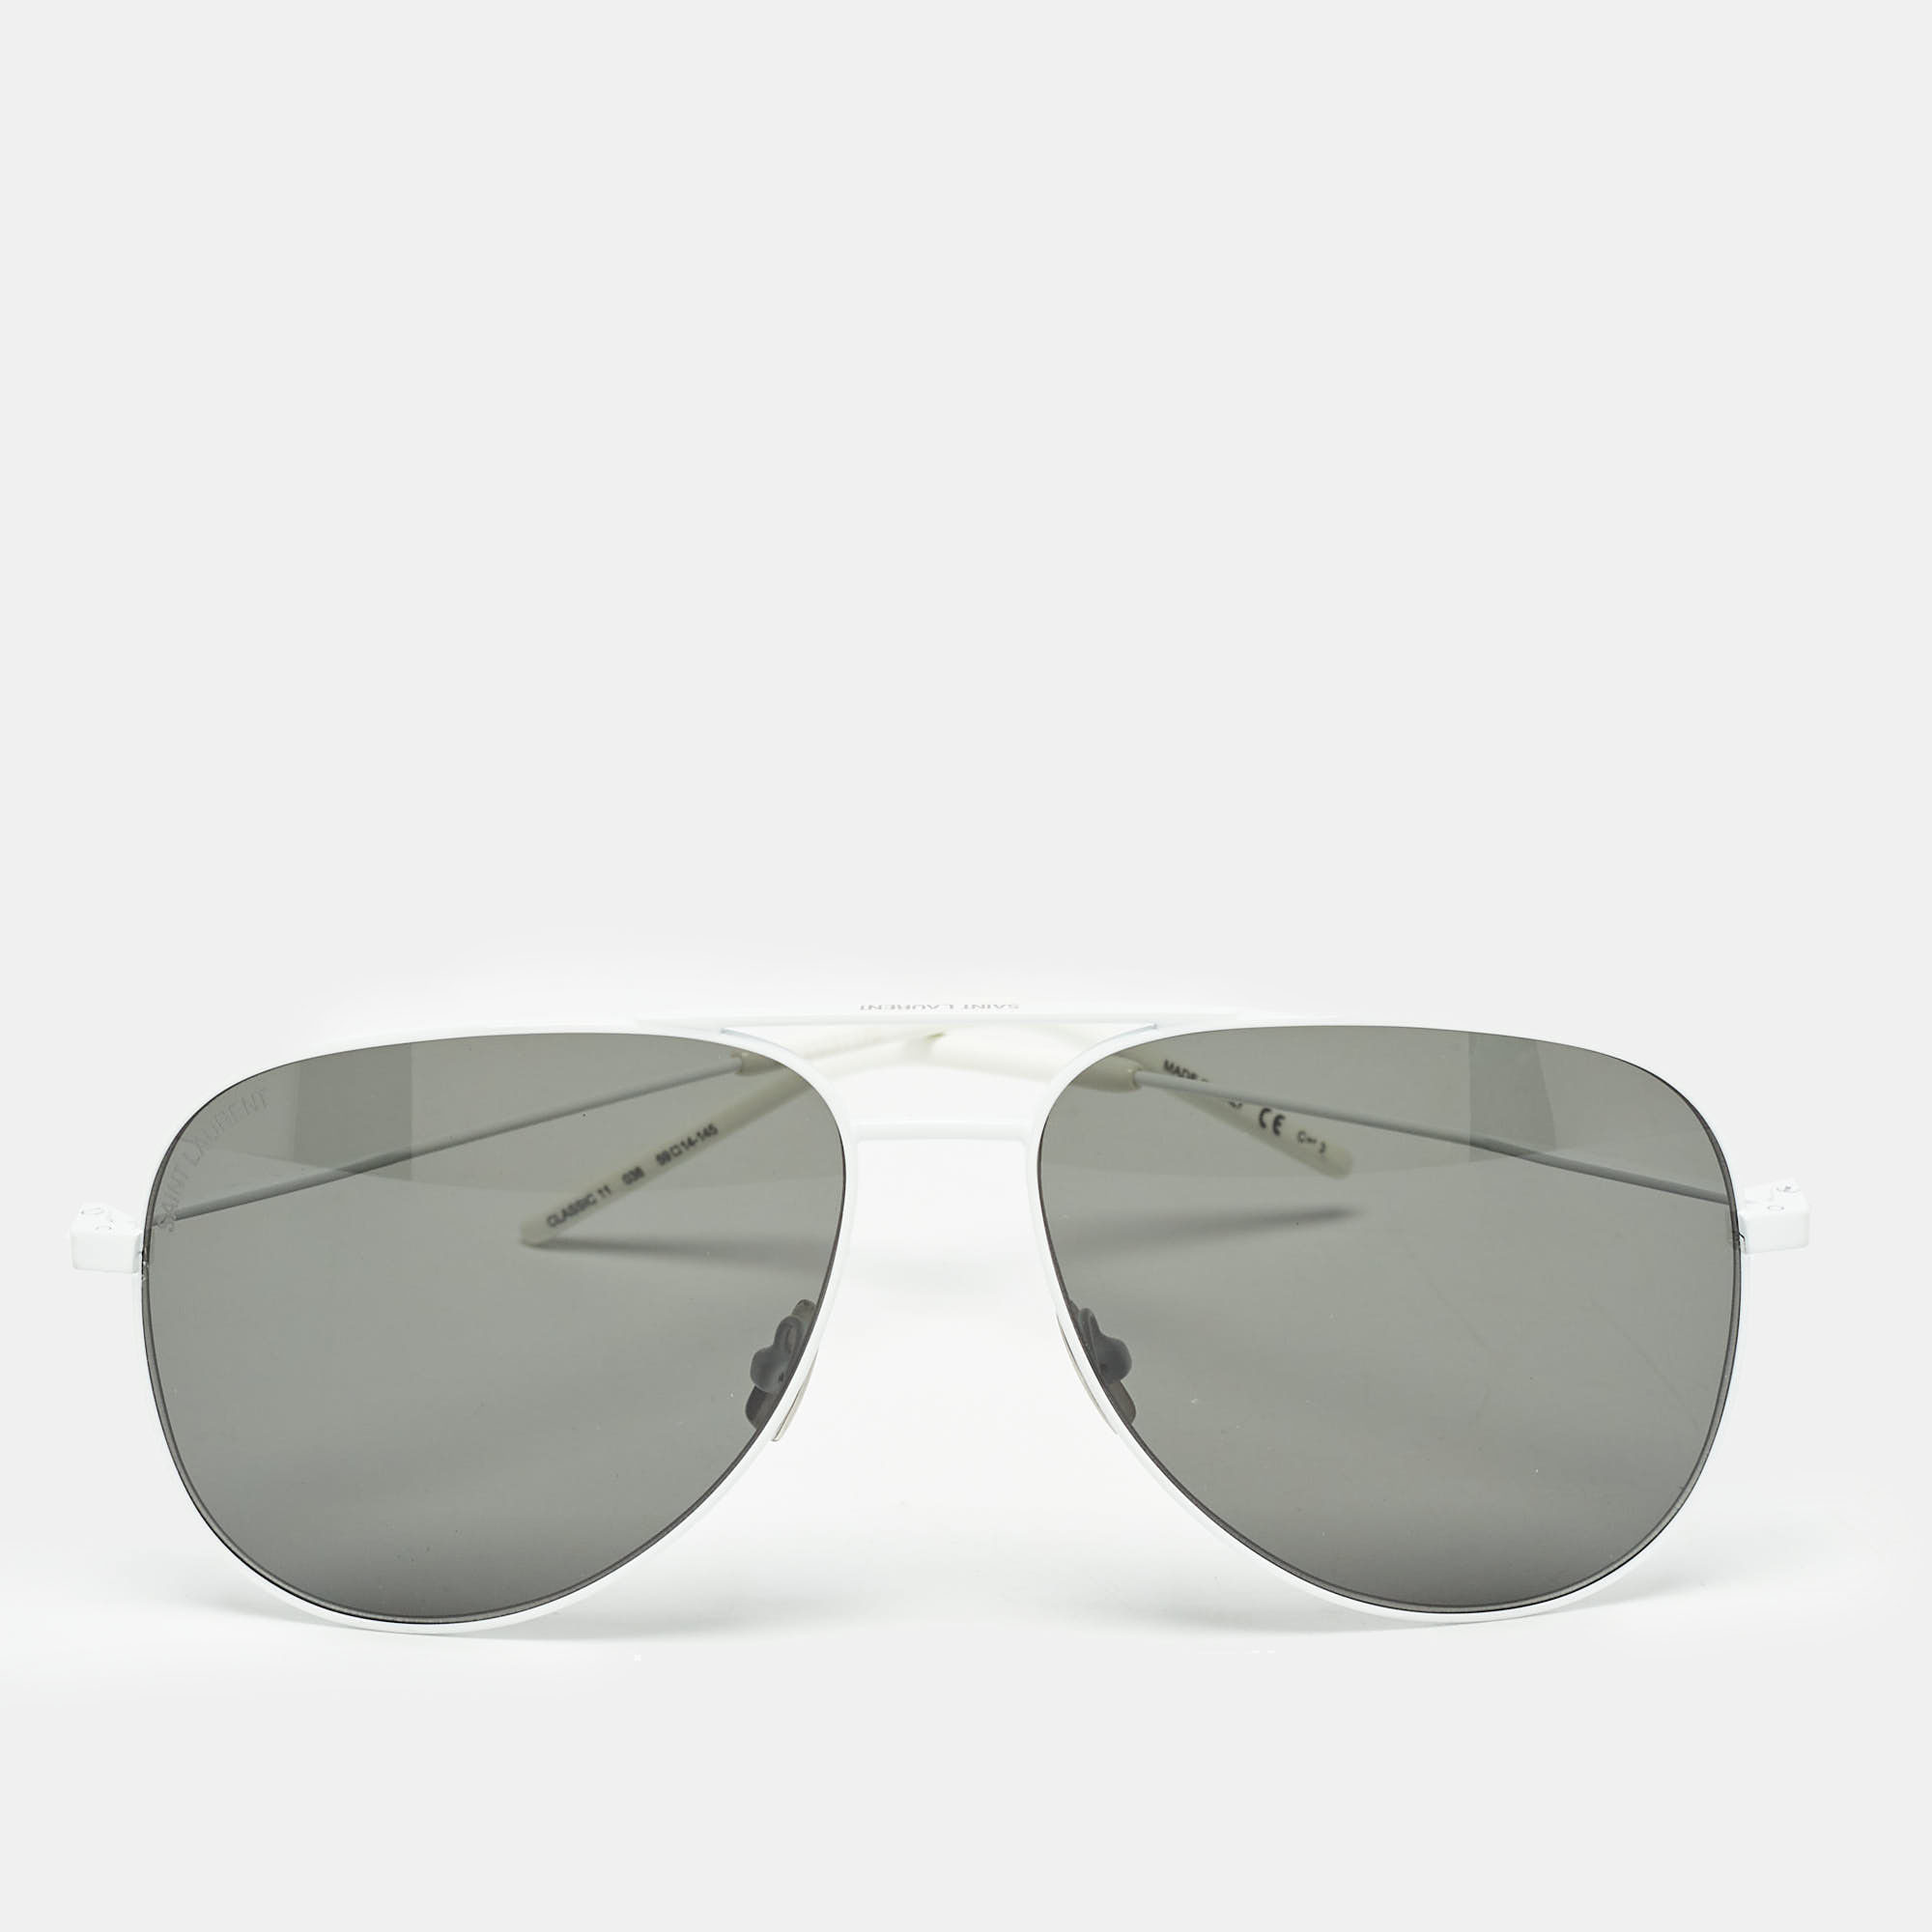 Saint laurent paris saint laurent white/black classic 11 aviator sunglasses